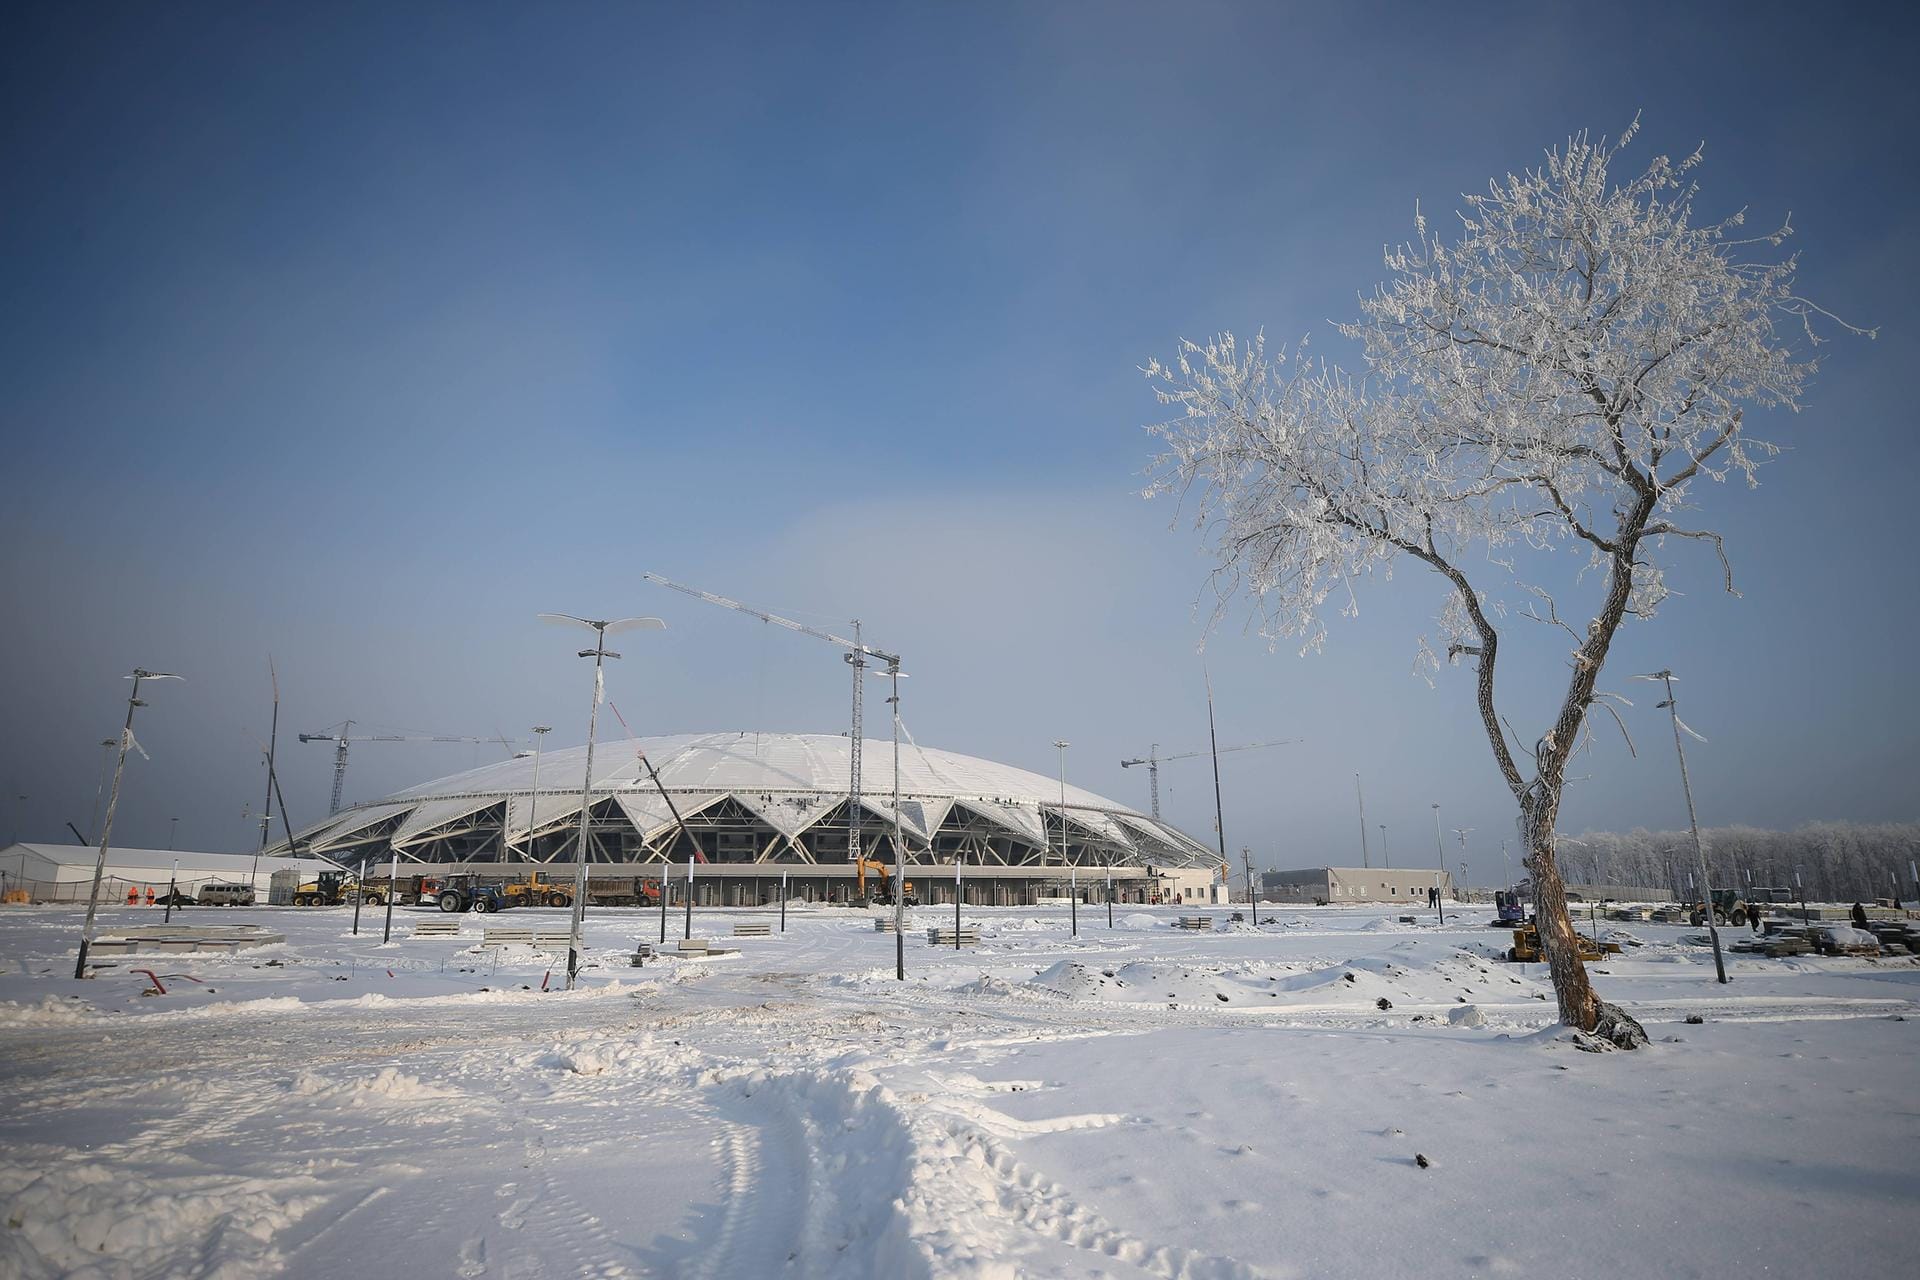 Stadion Samara: Die Bauarbeiten dieser Arena sind erst Anfang 2018 beendet worden, denn auch diese wurde eigens für die Fußball-WM entworfen. Auch hier finden ca. 45.000 Zuschauer Platz.